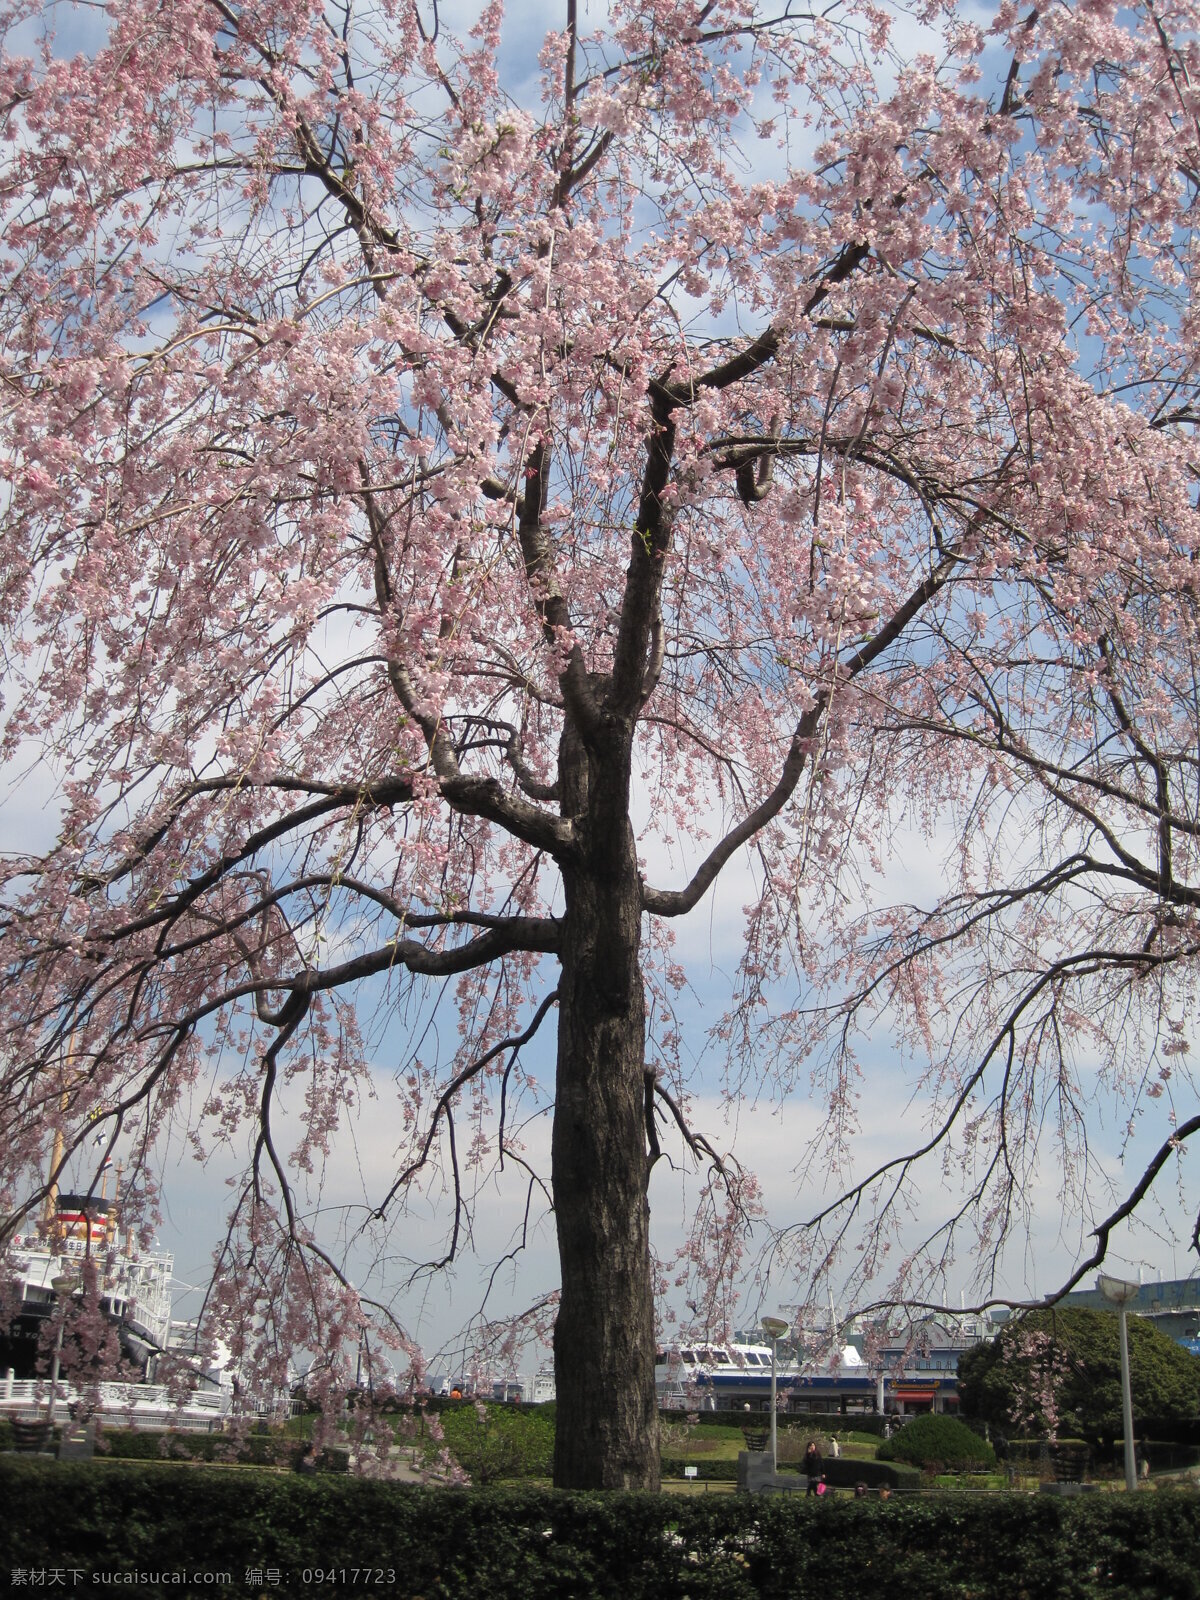 日本 横滨 港 国内旅游 旅游摄影 三月 日本横滨港 樱花满开 蔚蓝天空 风景拍摄 psd源文件